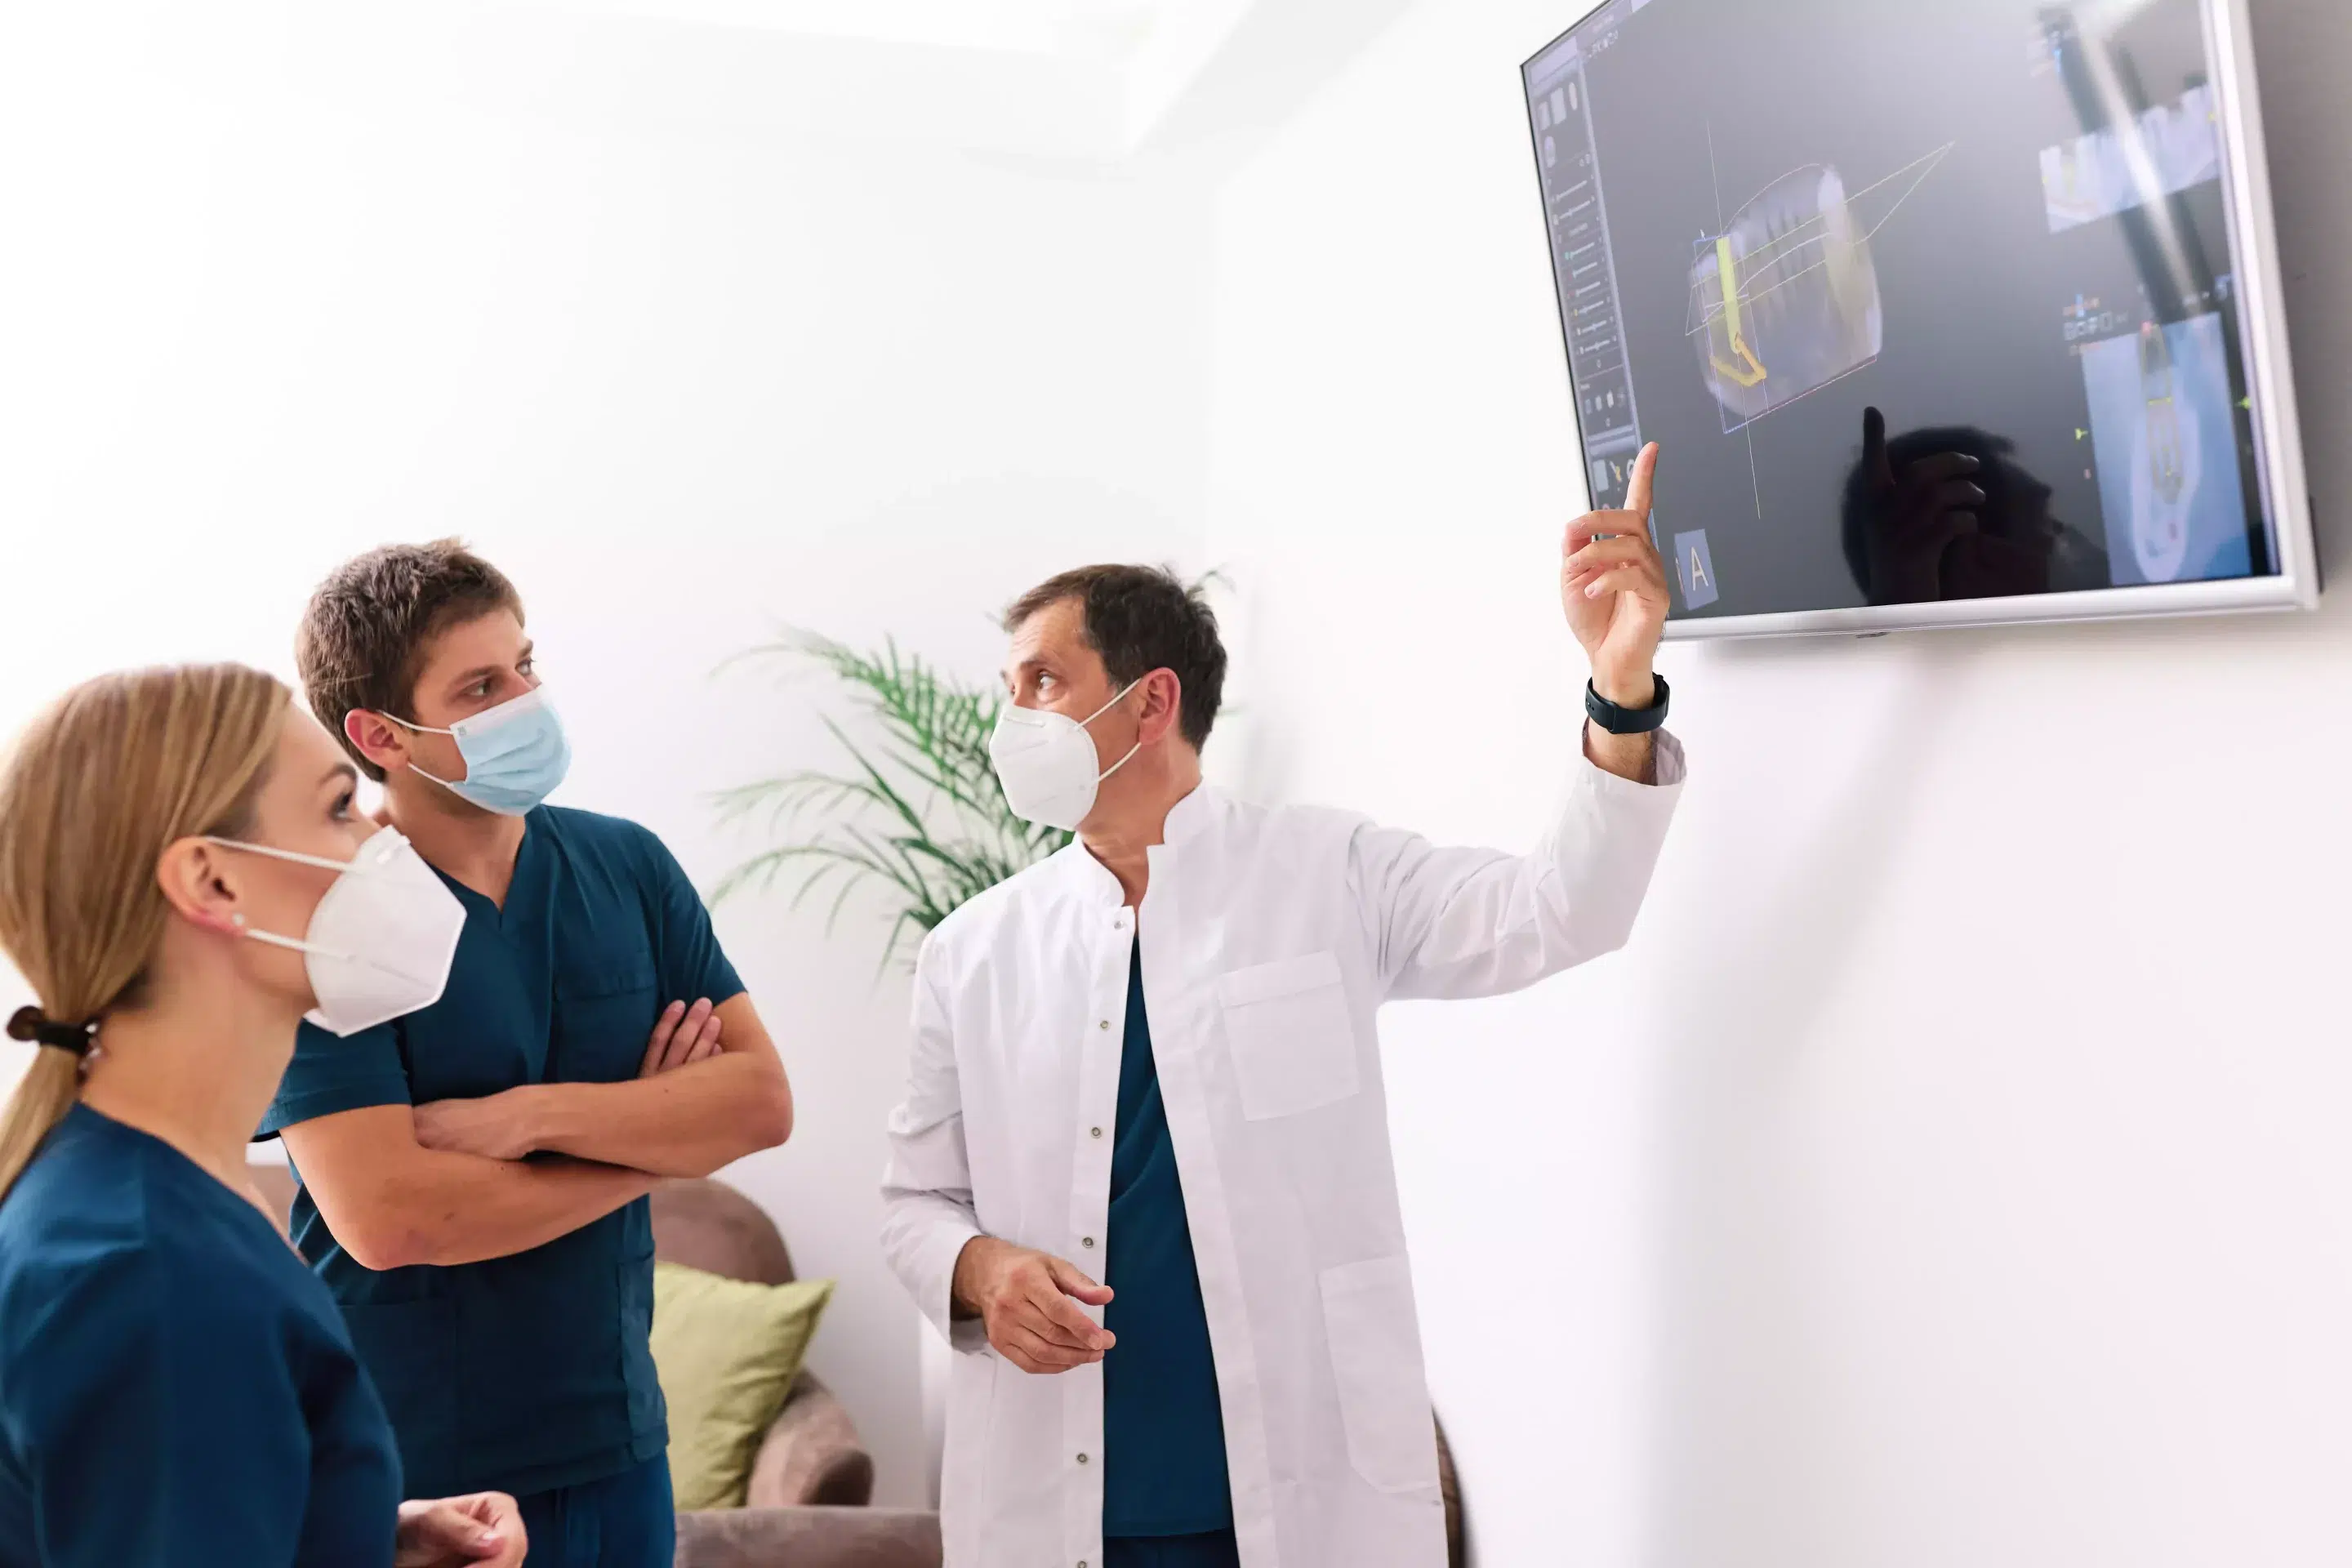 Dentistes montrant une radiographie sur une télévision, plante verte en fond